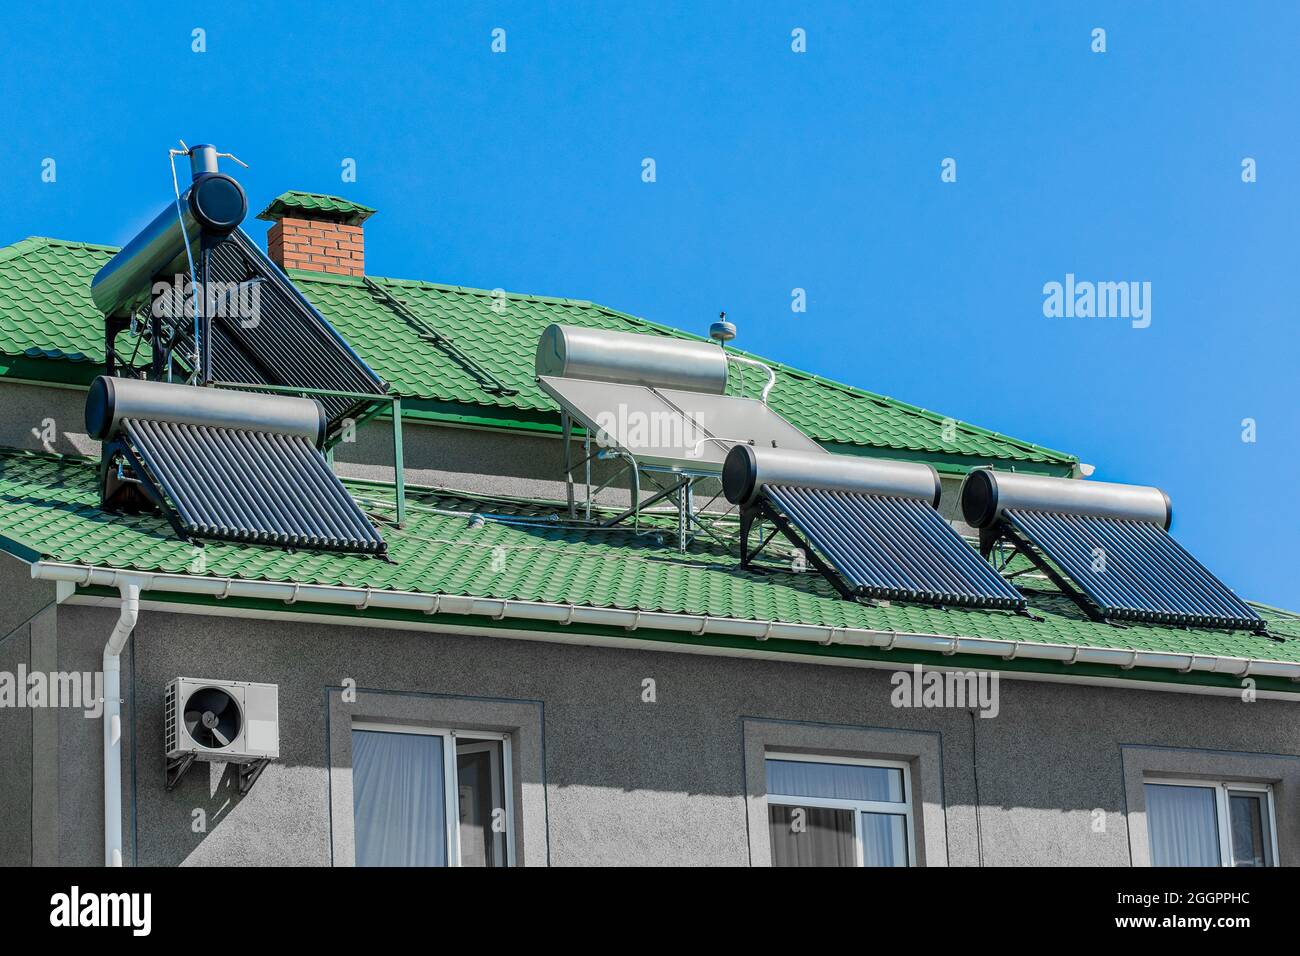 Thermische Solarheizung Paneele alternative Energiequelle auf dem Dach des  Hauses vor dem Hintergrund des blauen Himmels Stockfotografie - Alamy